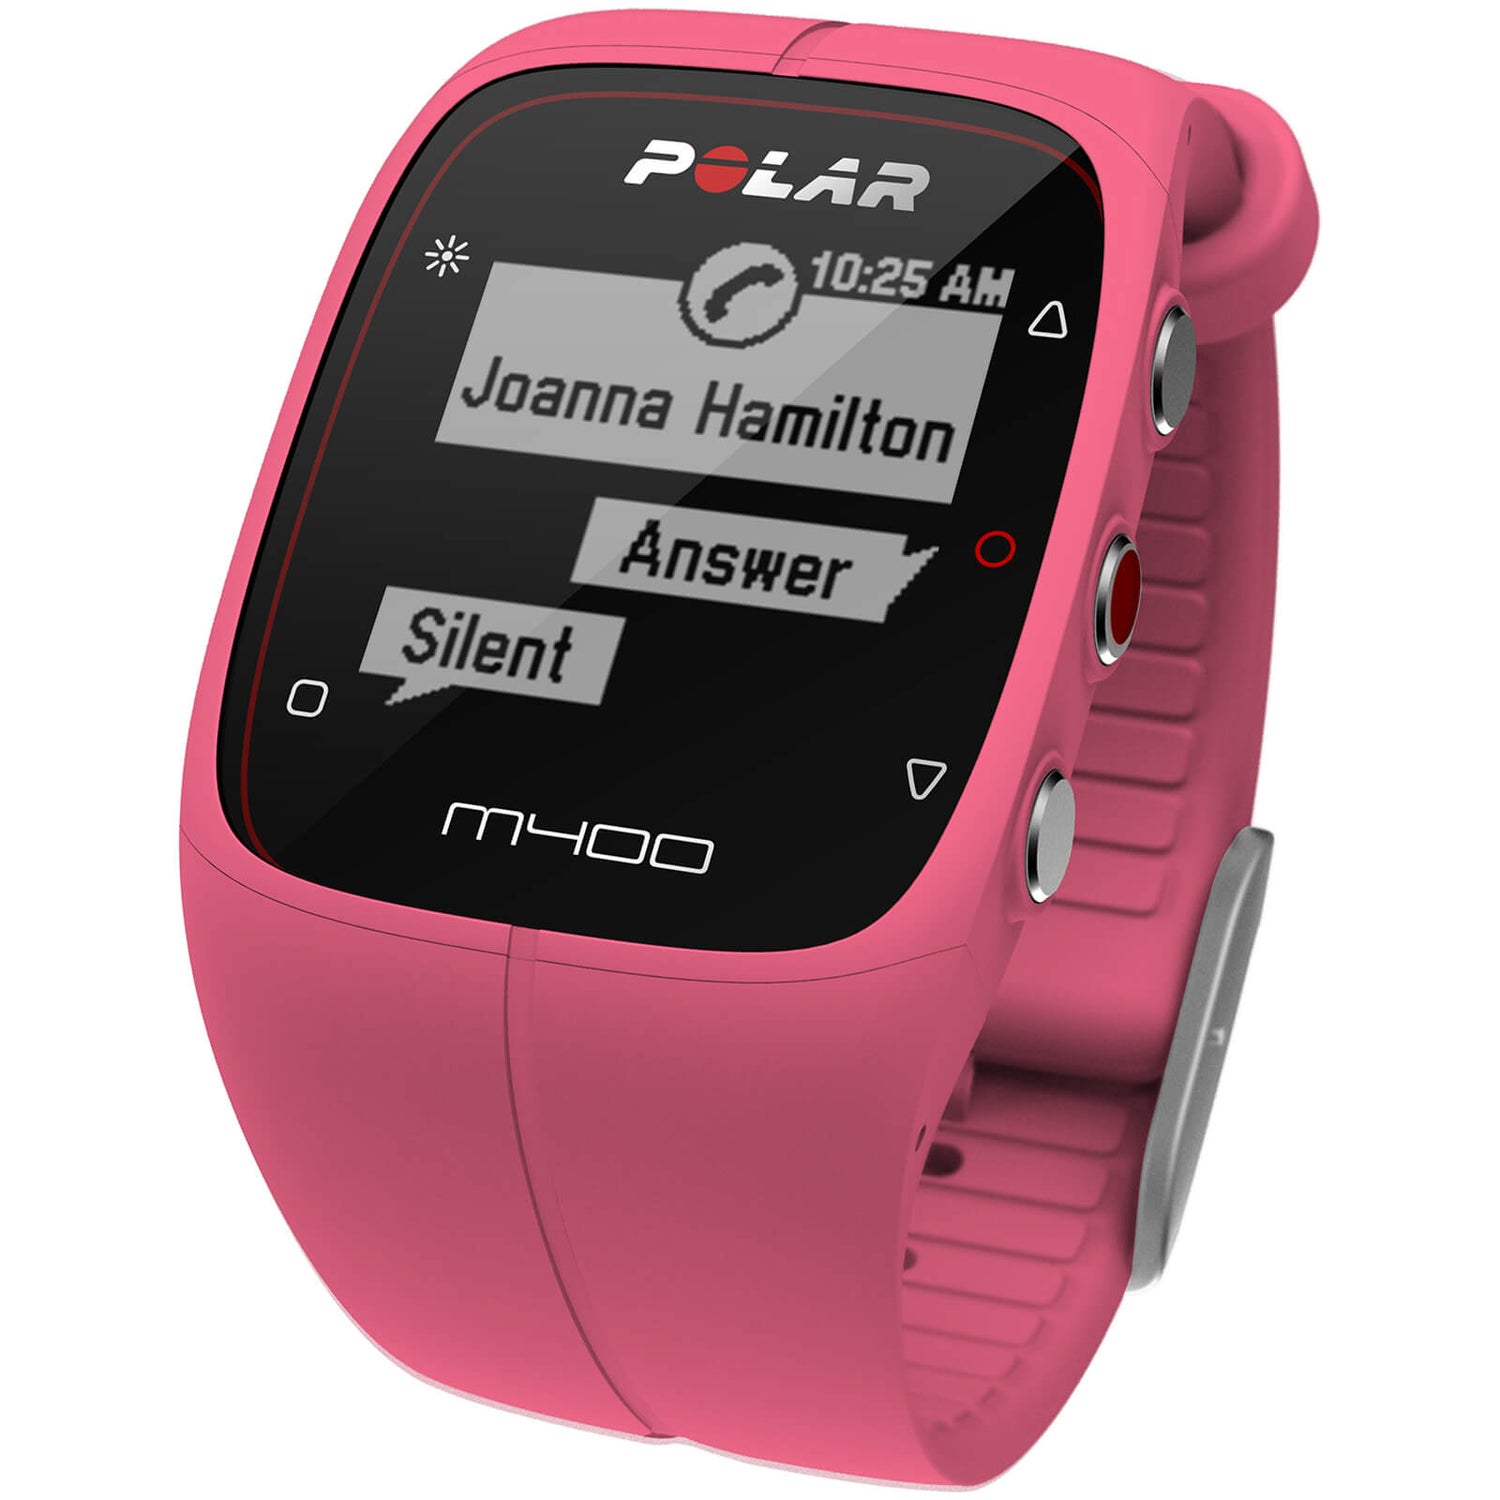 Meer dan wat dan ook ik ben ziek condoom Polar M400 GPS Running Watch with Heart Rate Monitor - Pink | ProBikeKit.com